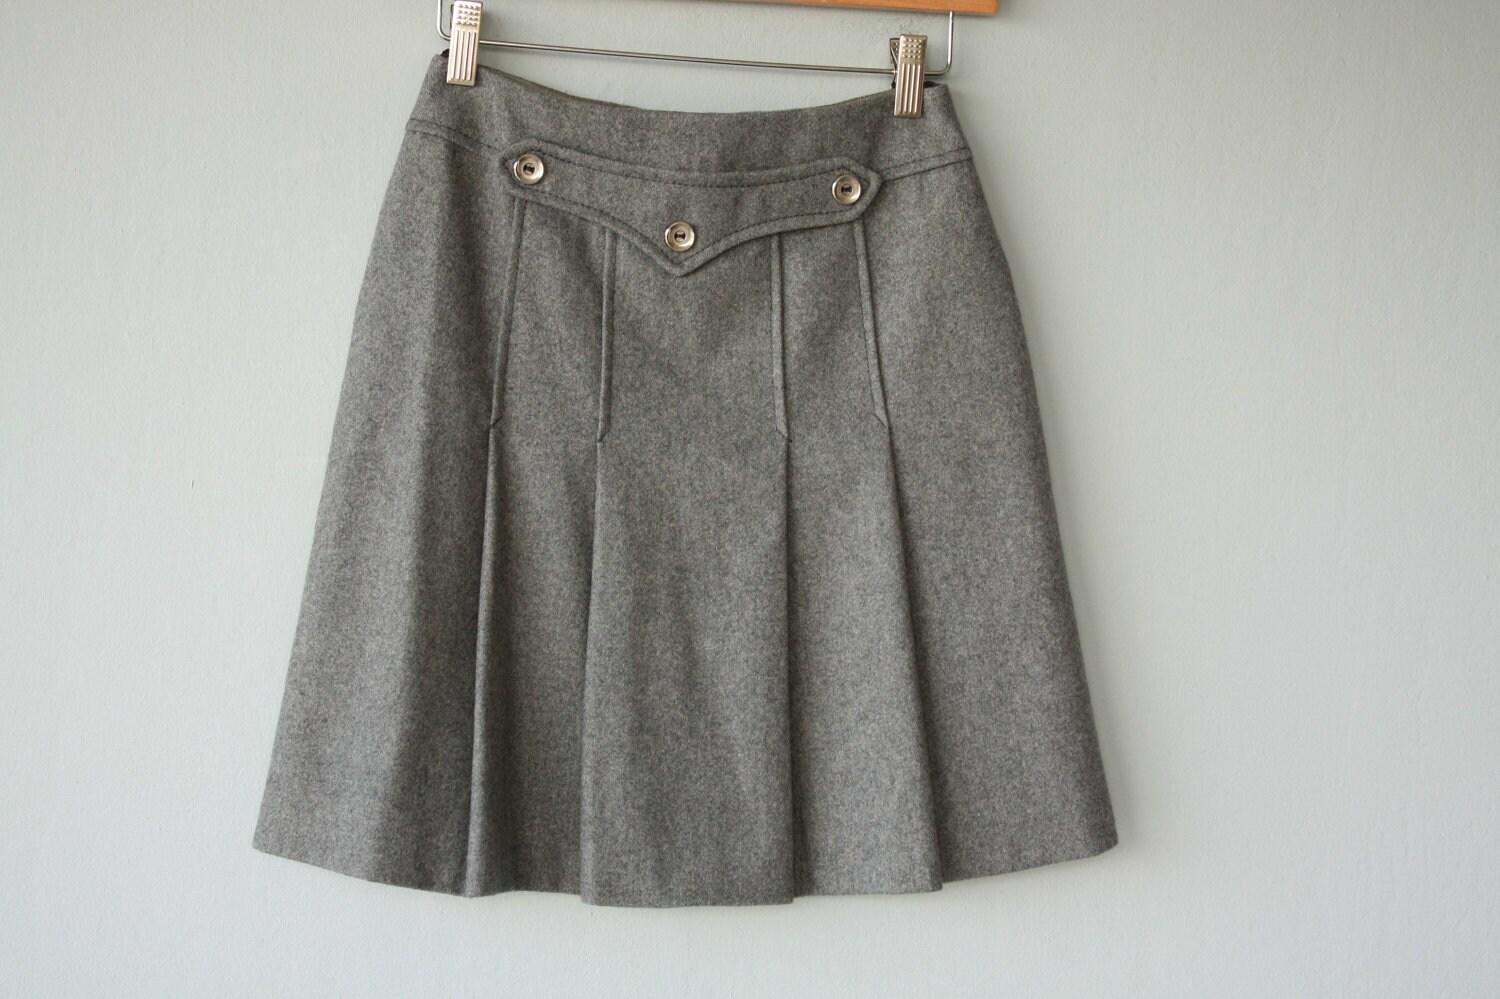 60s skirt / gray wool skirt / pleated mini skirt / 1960s skirt